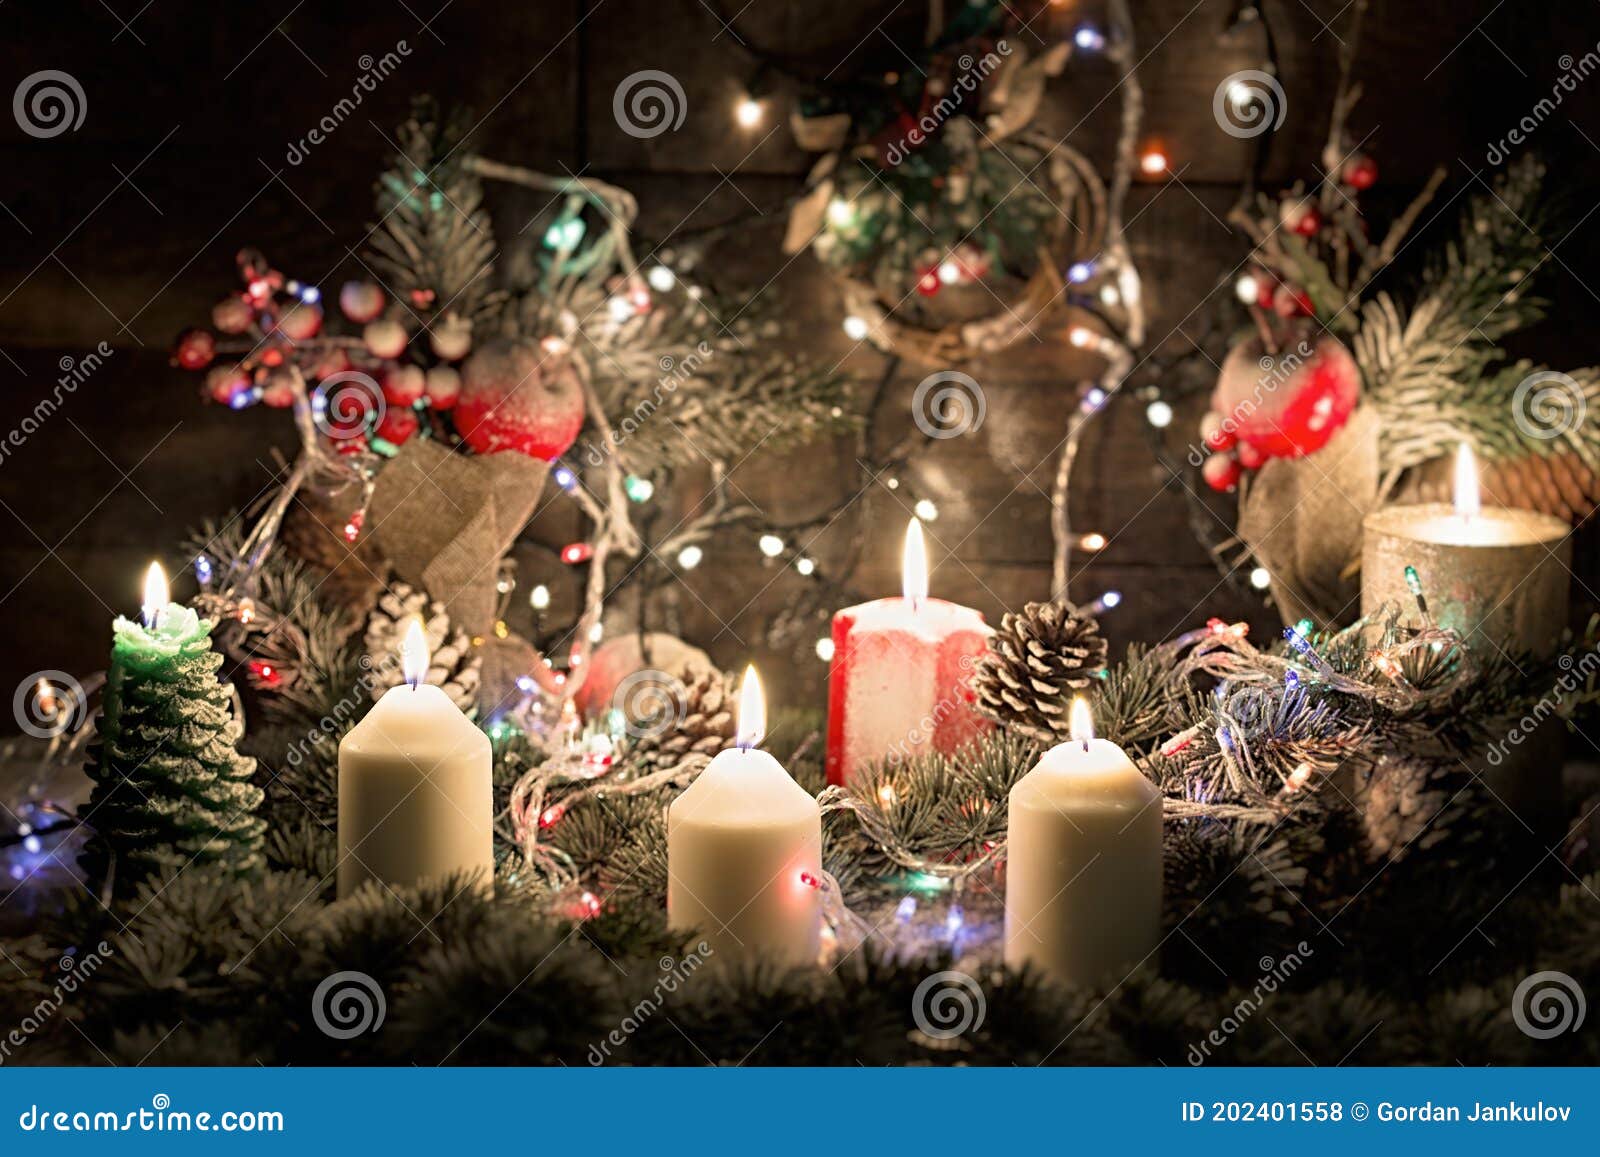 Decoração De Natal árvore De Natal E Decoração De Velas Para a Mais Bela  Noite Foto de Stock - Imagem de projeto, pinho: 202401558